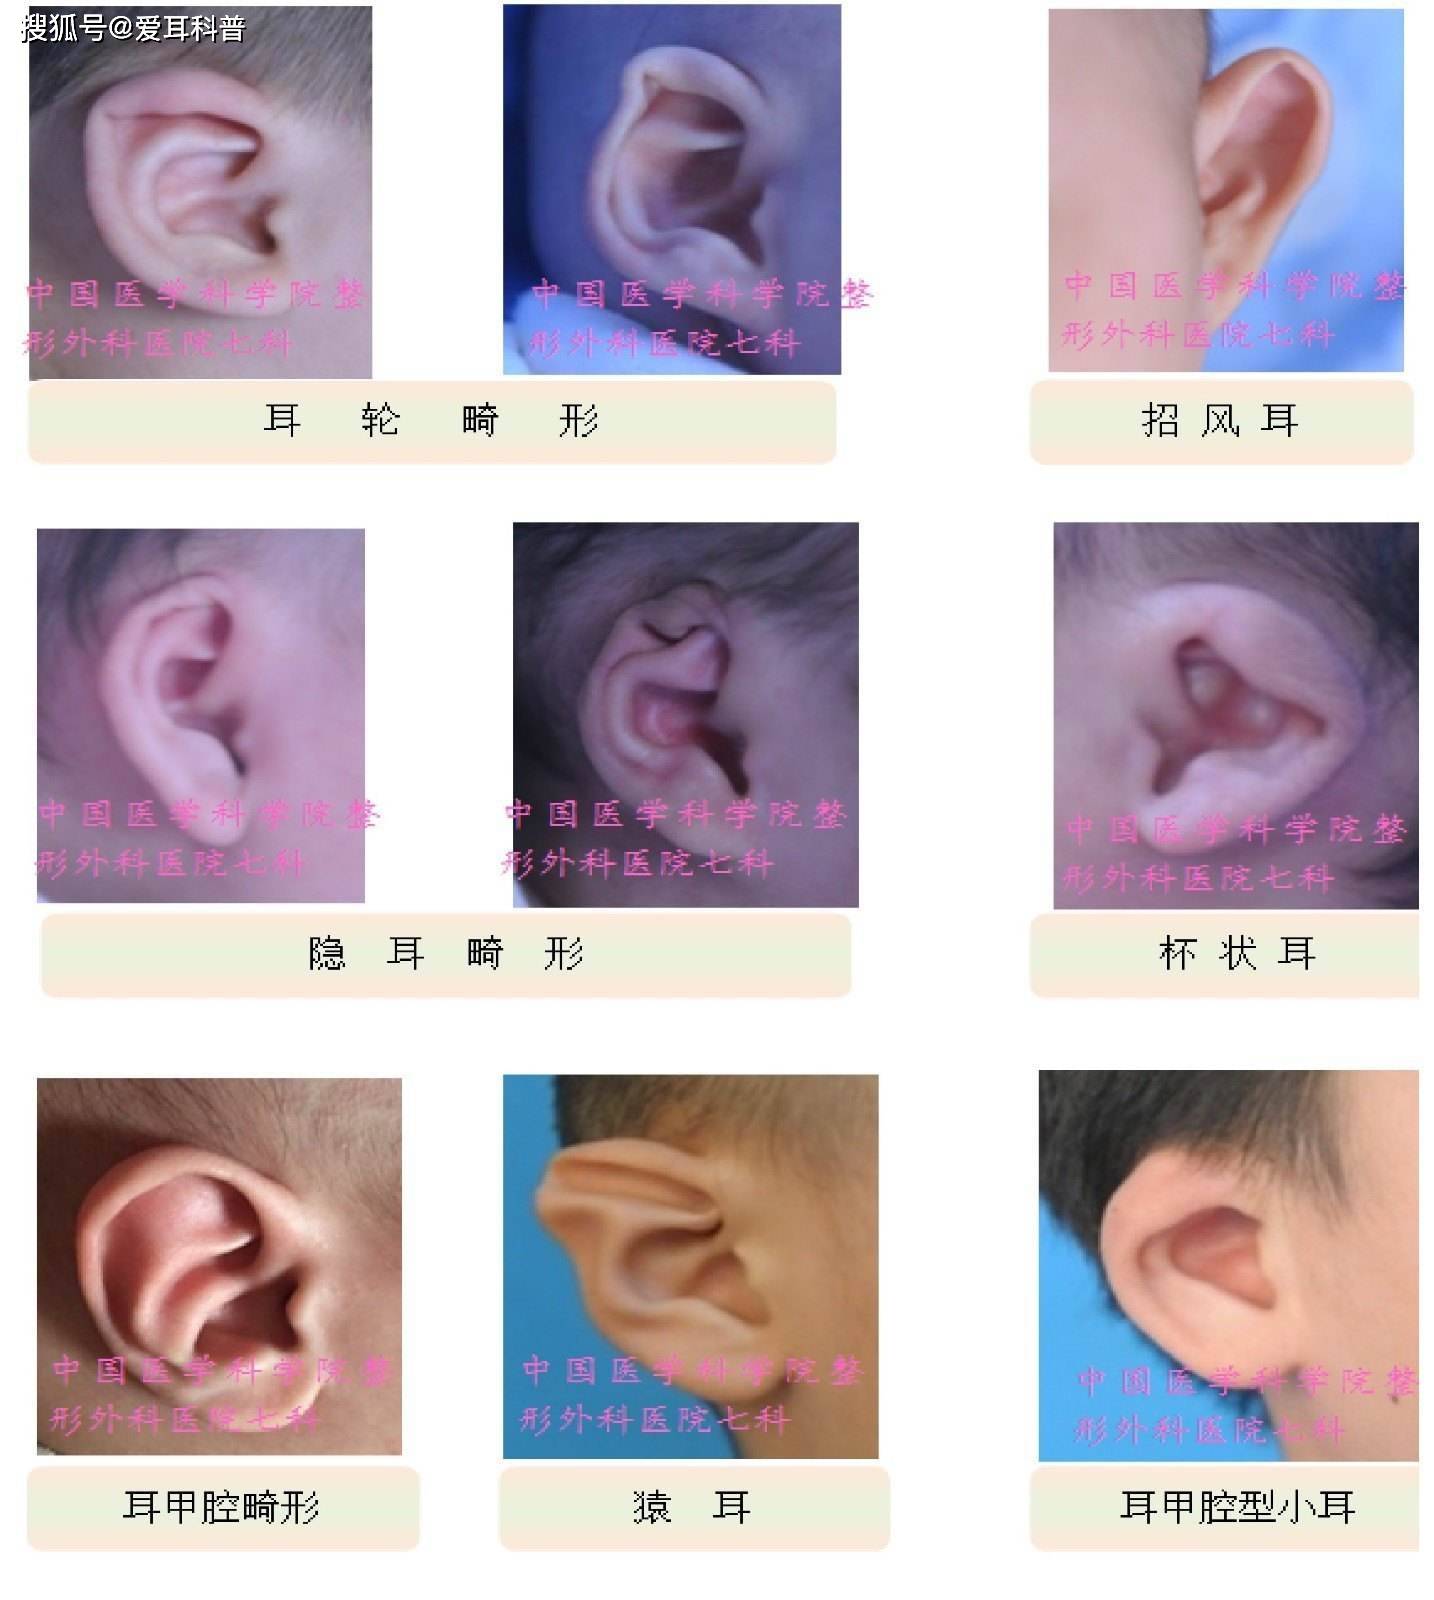 婴儿耳朵畸形有哪几种类型